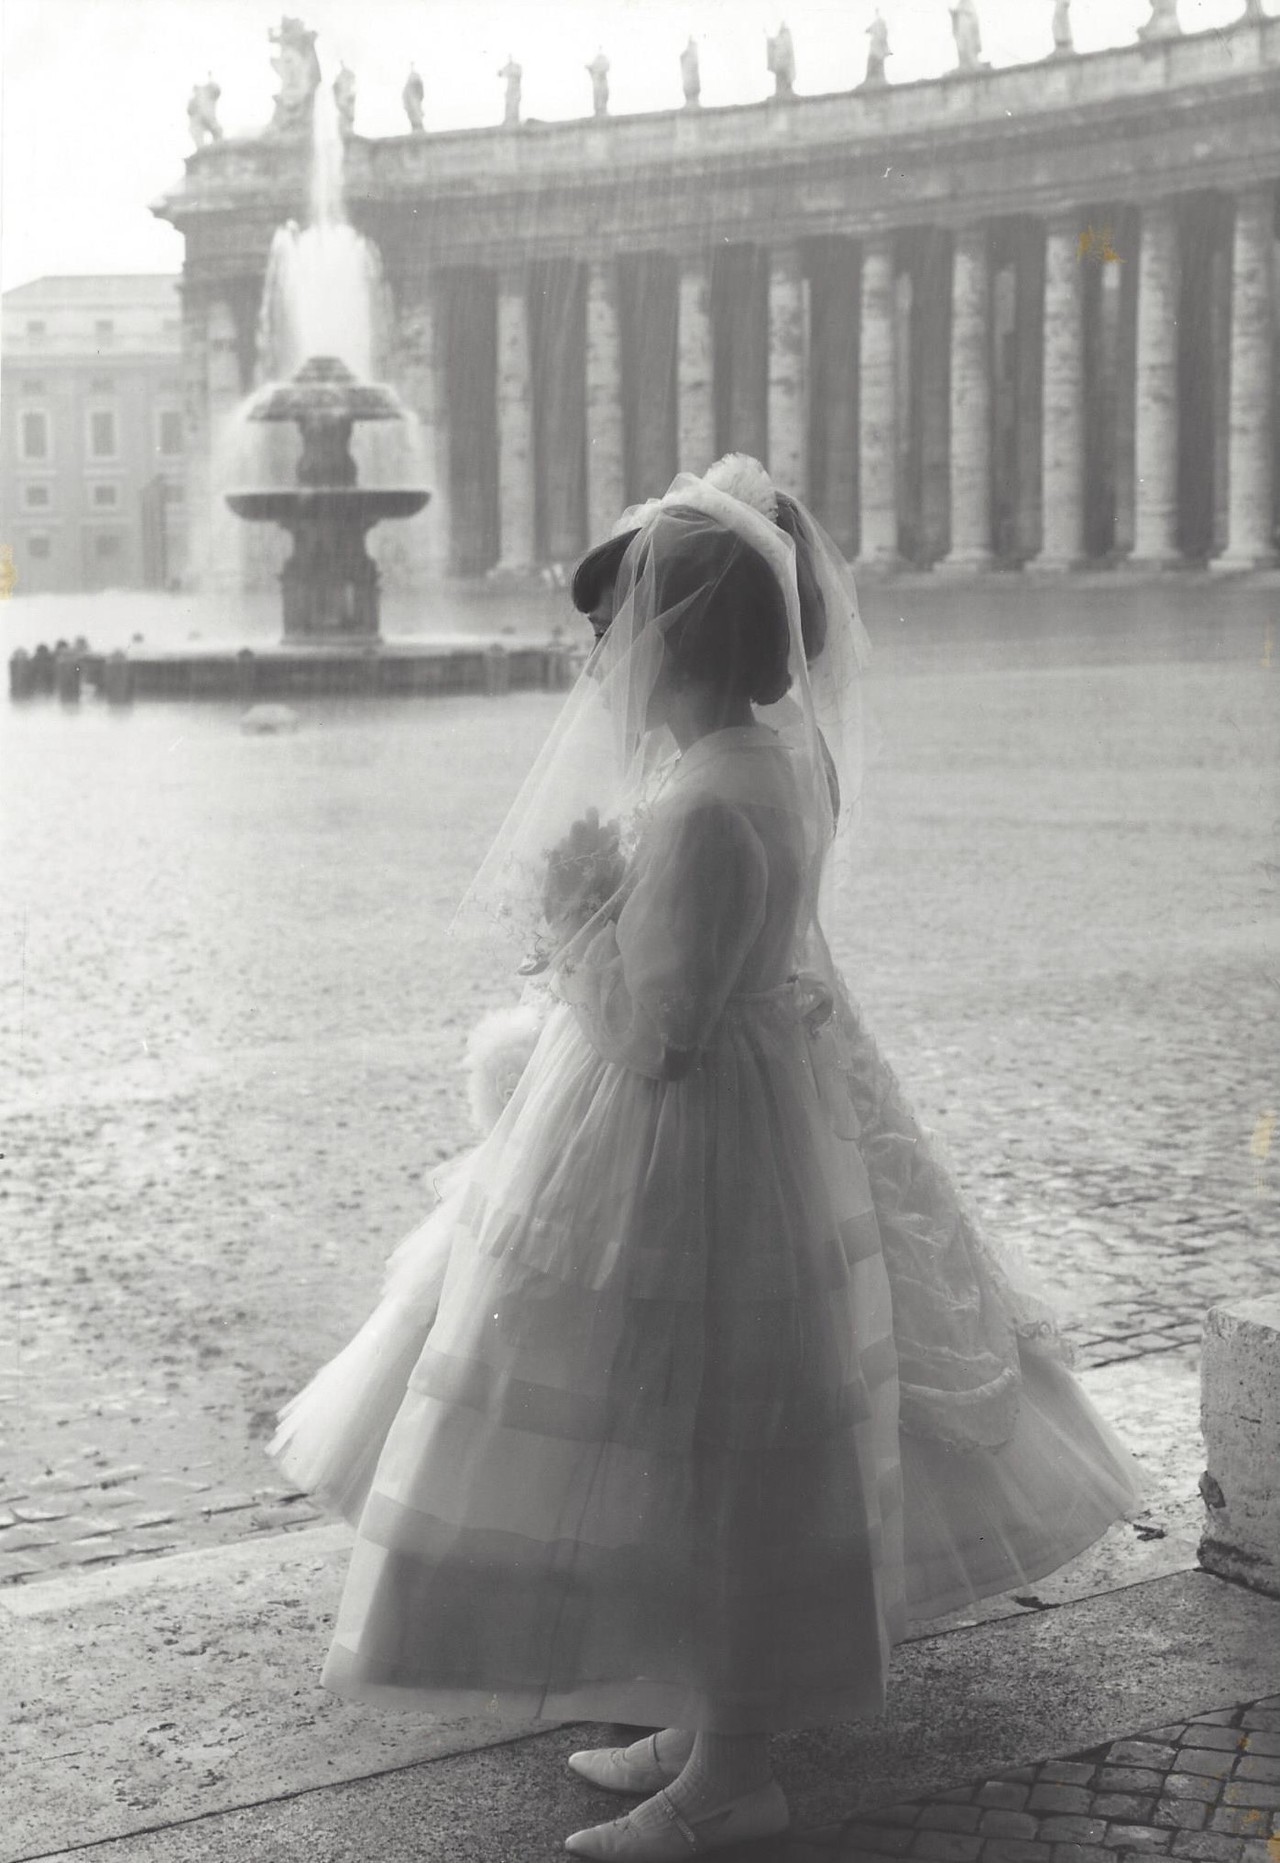 Площадь Святого Петра, Ватикан, Рим, 1957–1963. Фотограф Кис Шерер